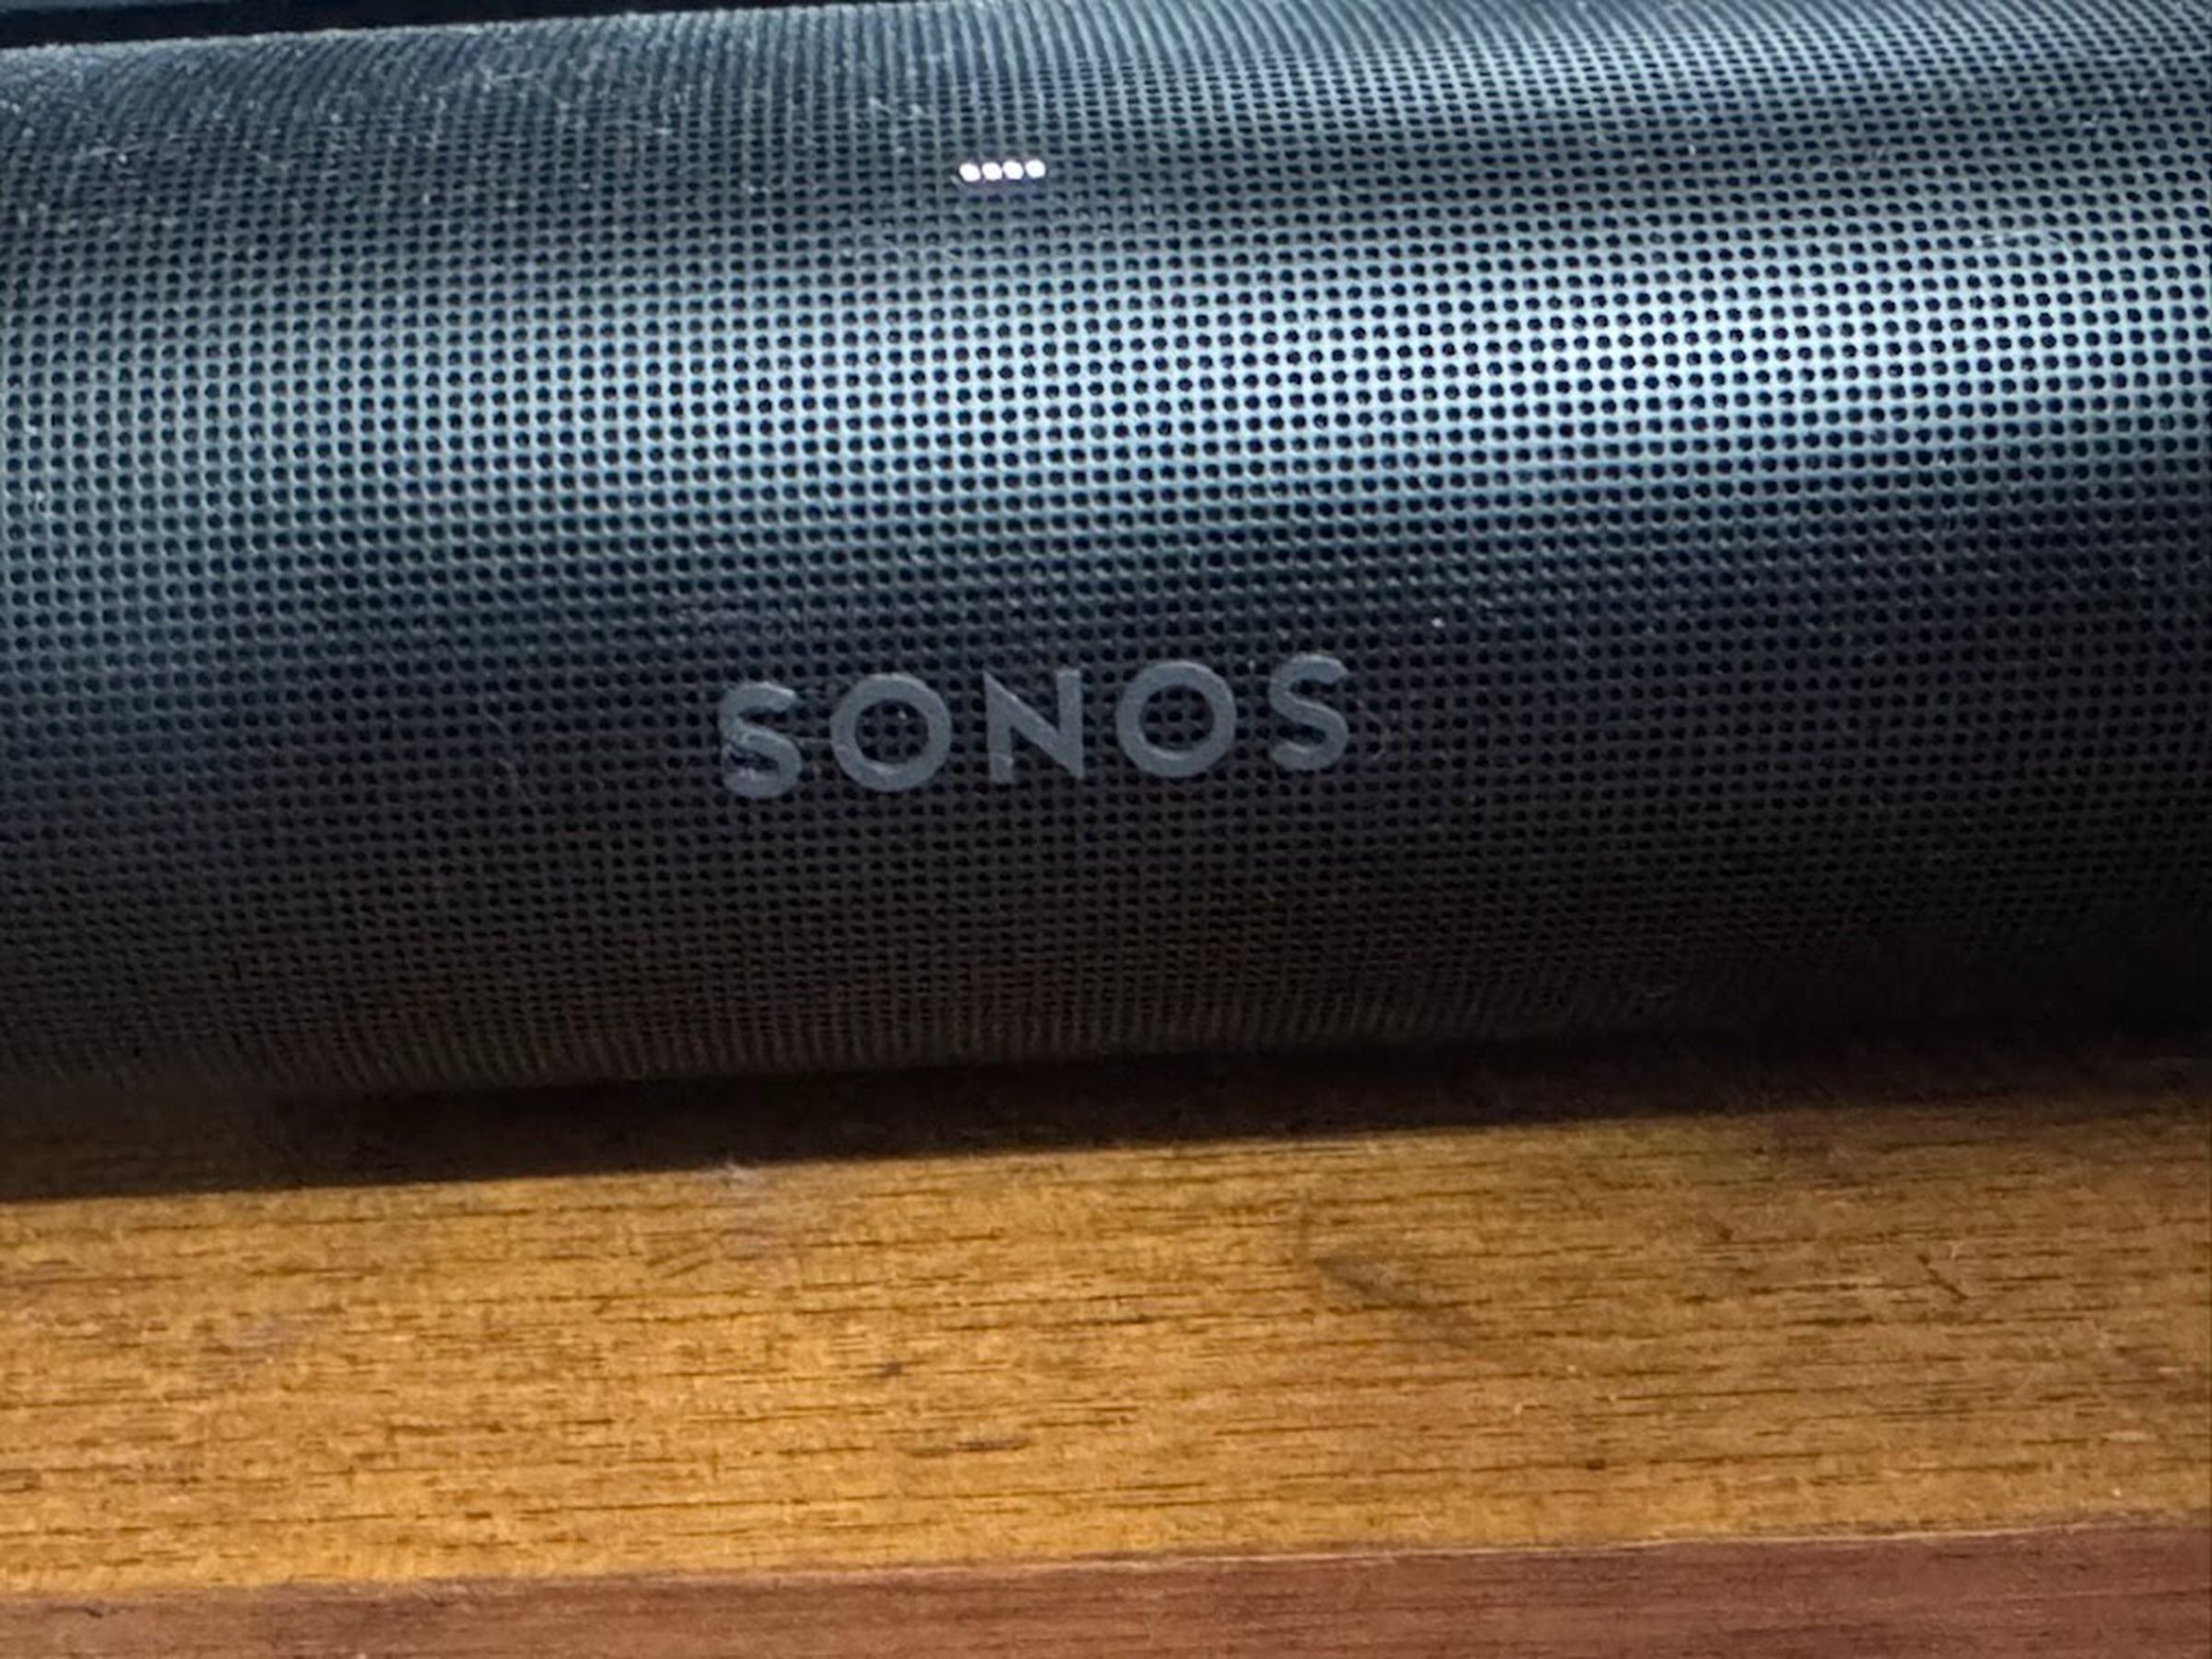 Una nuova soundbar potrebbe guarire le ferite che Sonos si è inflitto?